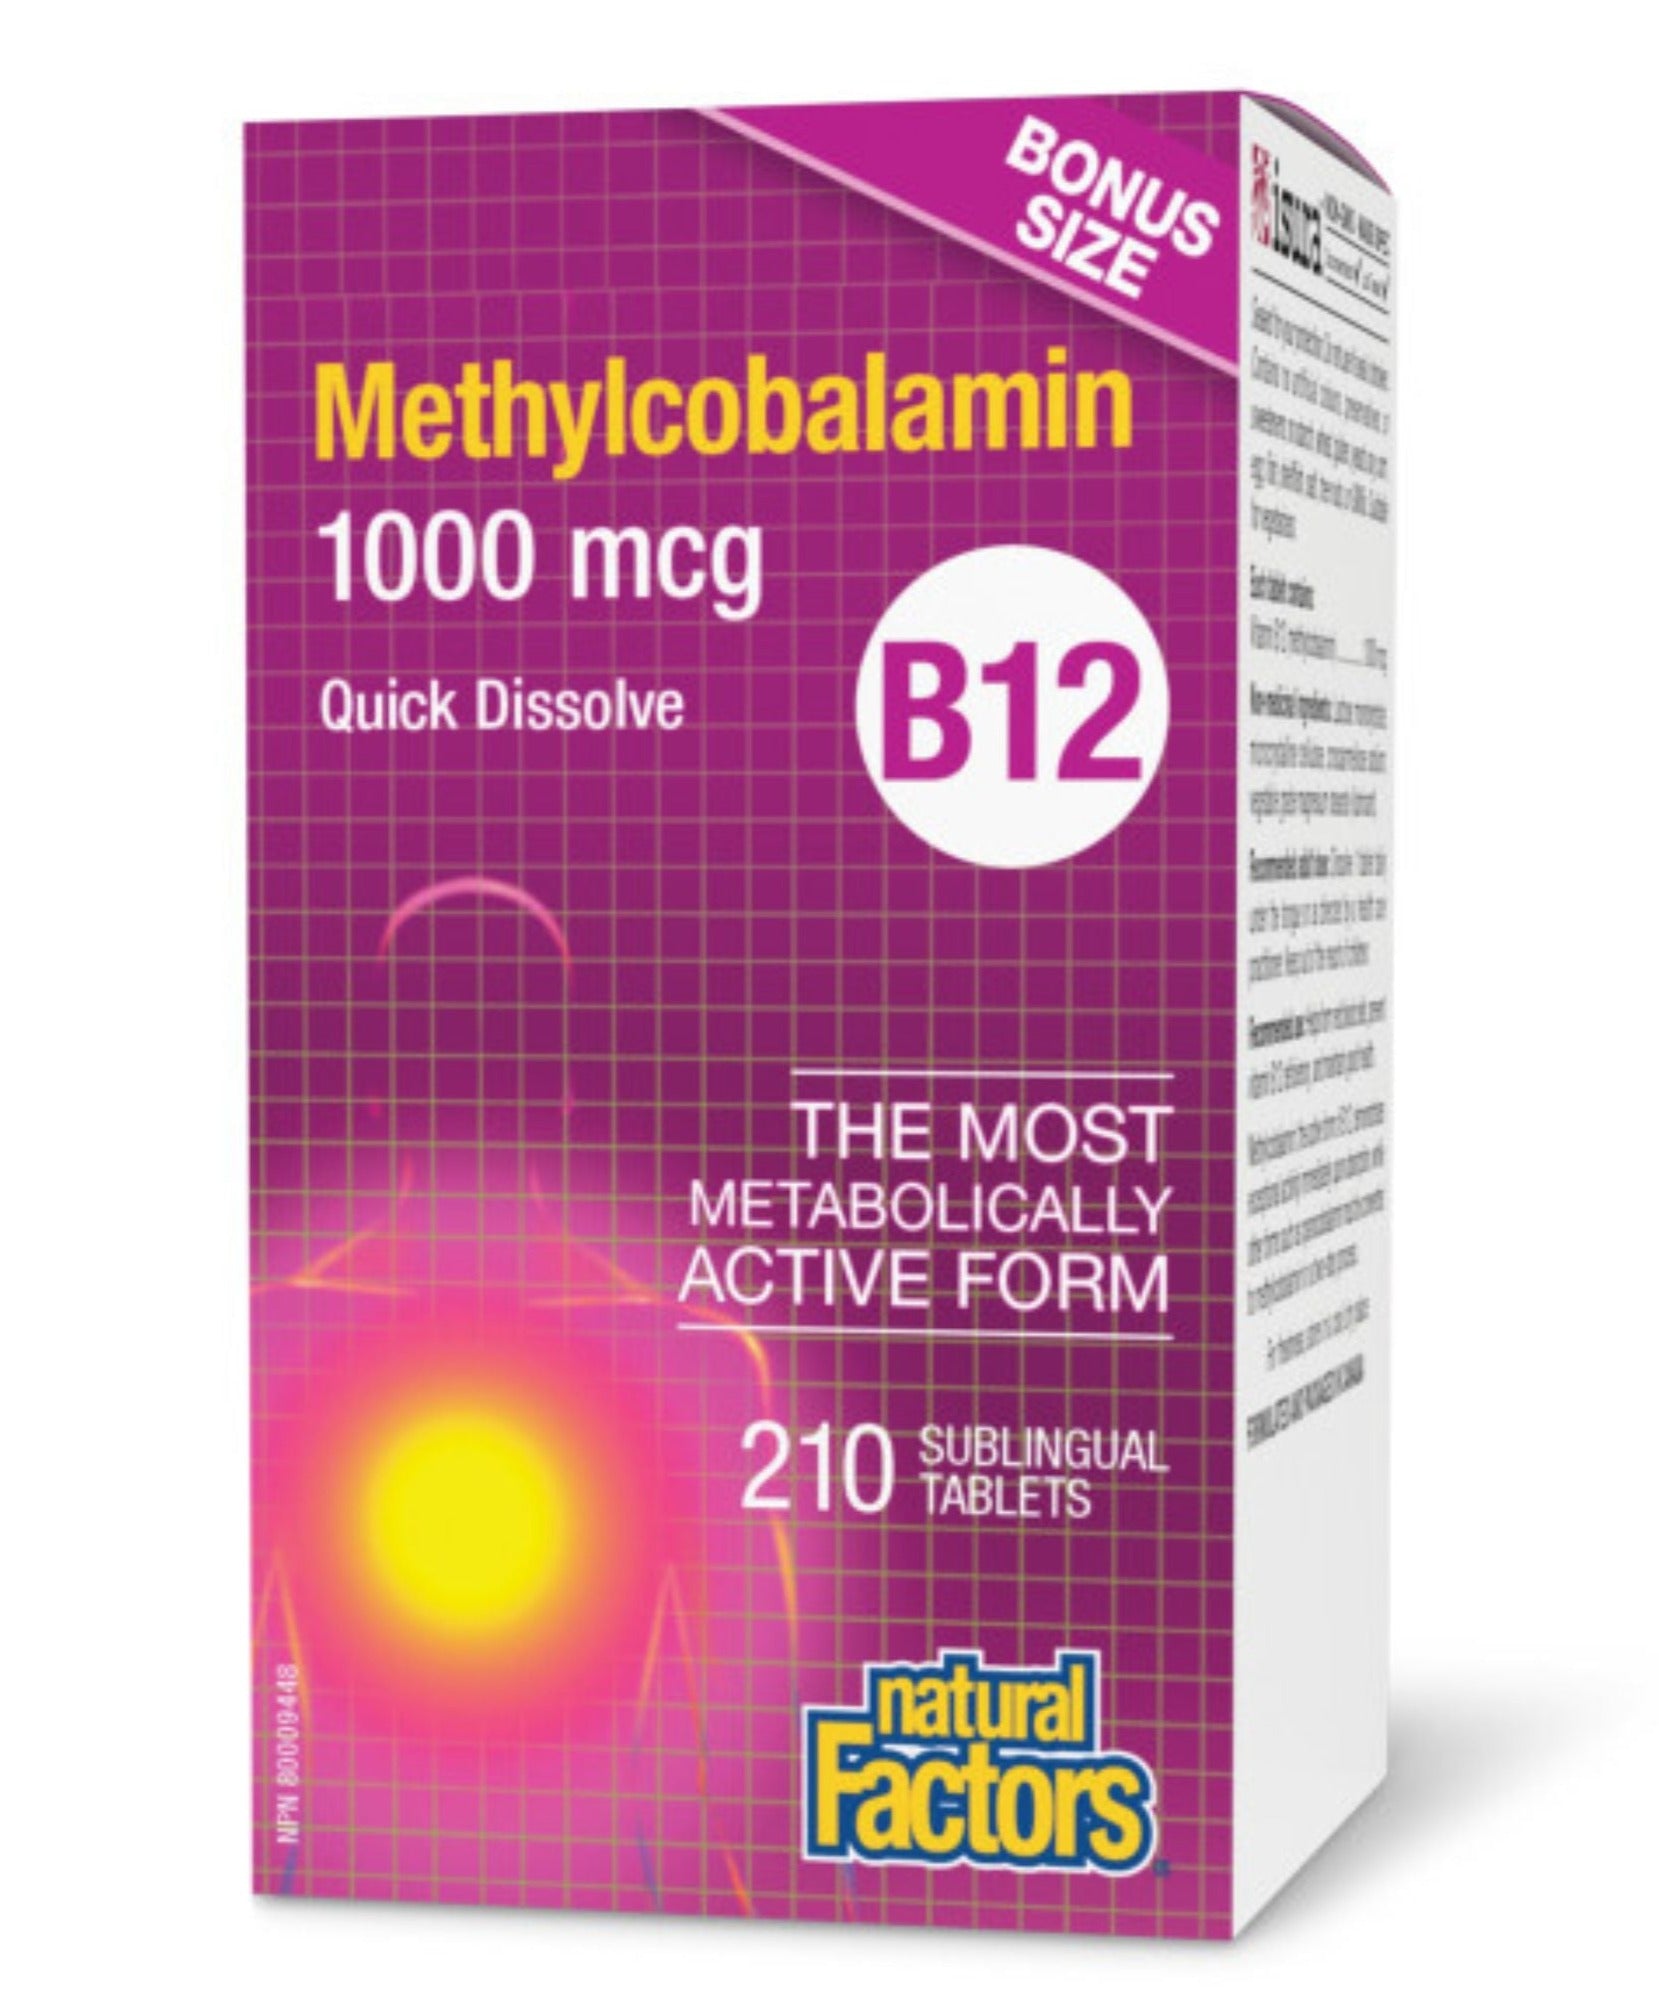 Natural Factors B12 Methylcobalamin 1000 mcg Bonus Size (180s + 30s)